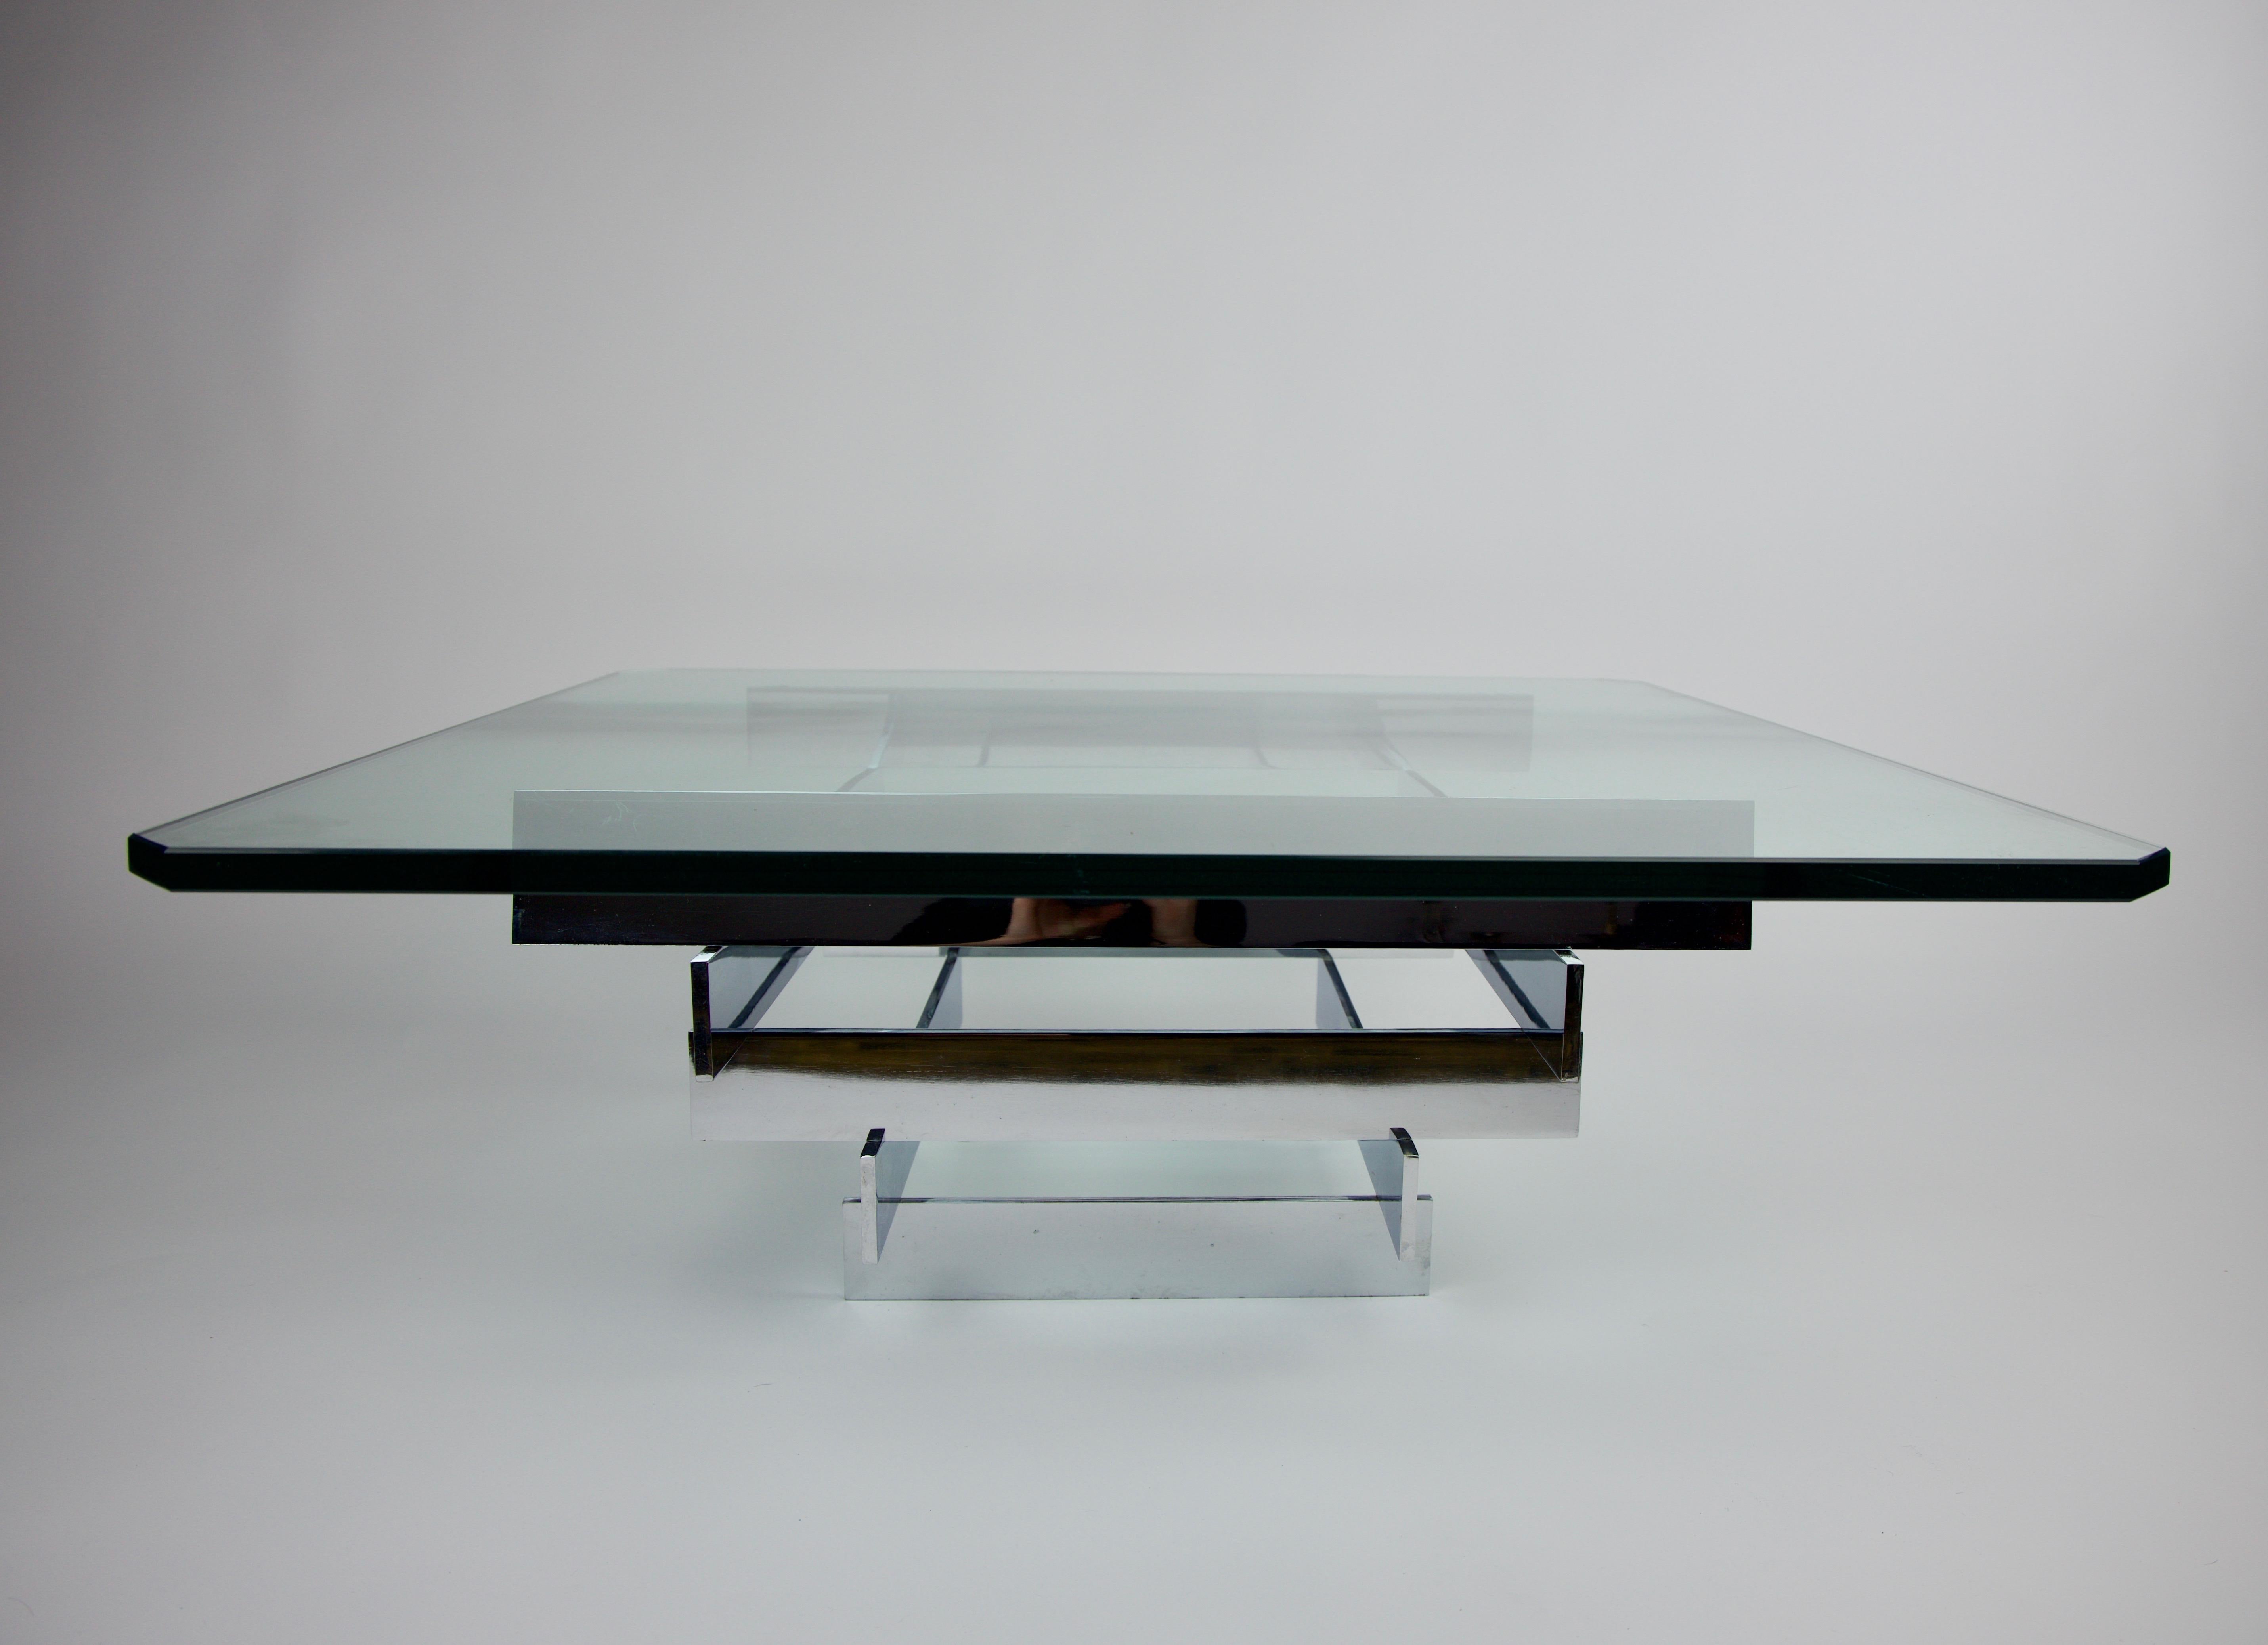 Base de table basse empilée chromée Paul Mayen pour Habitat International
Table architecturale au design minimaliste similaire à celle de Paul Evans. Base robuste composée de 3 niveaux de pièces chromées empilées en forme de carré avec une pièce de